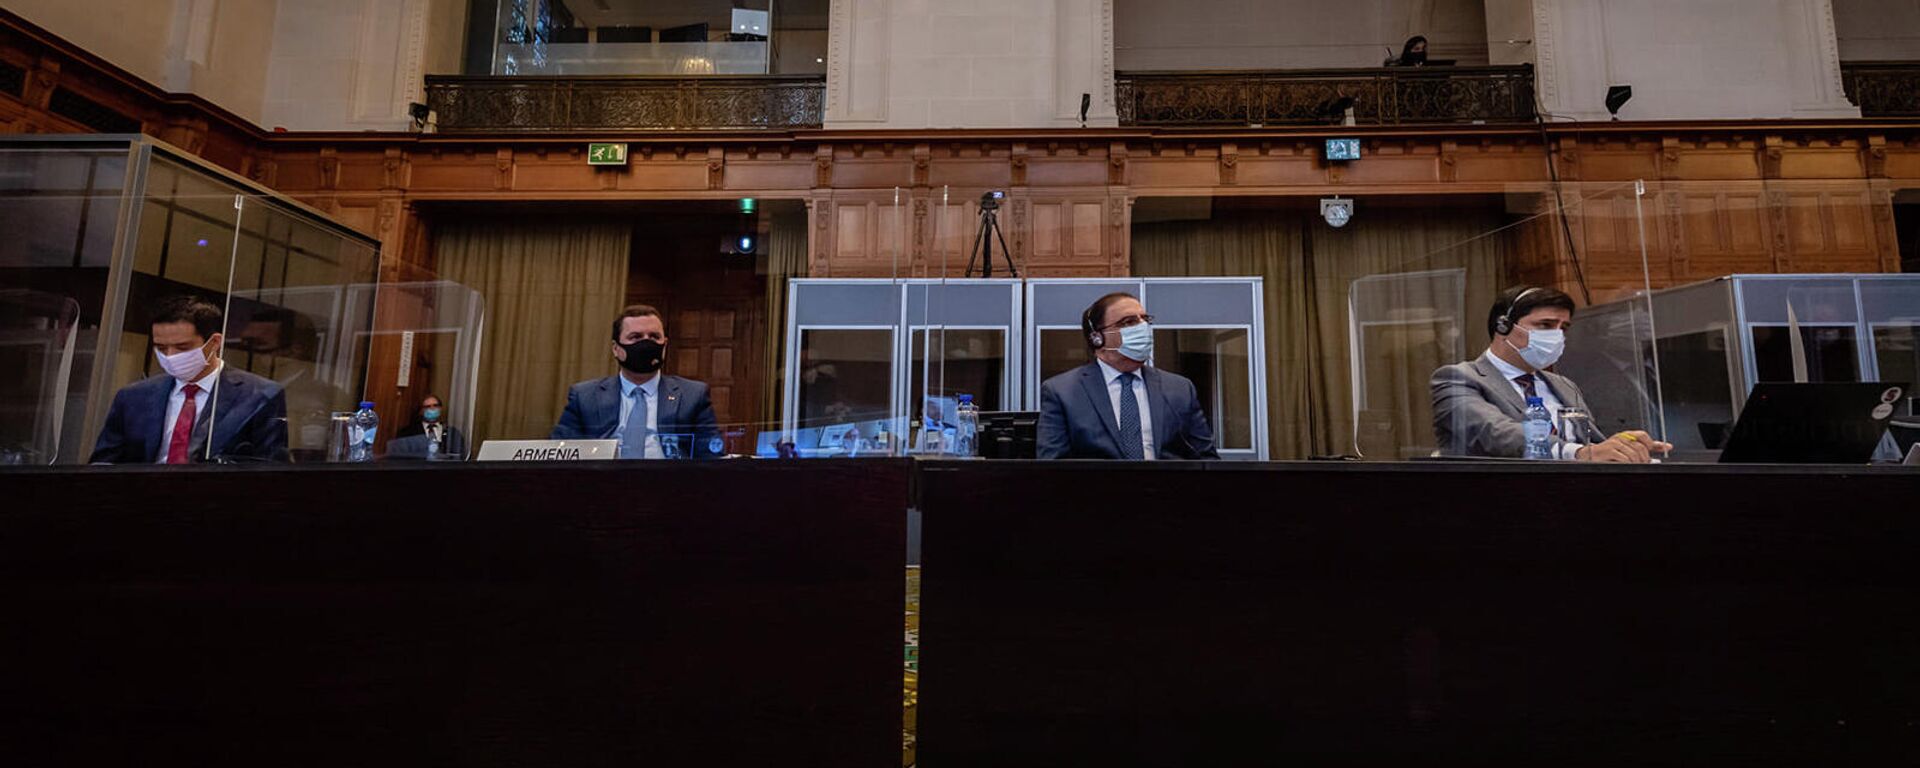 В Международном суде ООН началось слушание по вопросу о неотложных мерах по делу Азербайджан против Армении (18 октября 2021). Гаага - Sputnik Армения, 1920, 18.10.2021